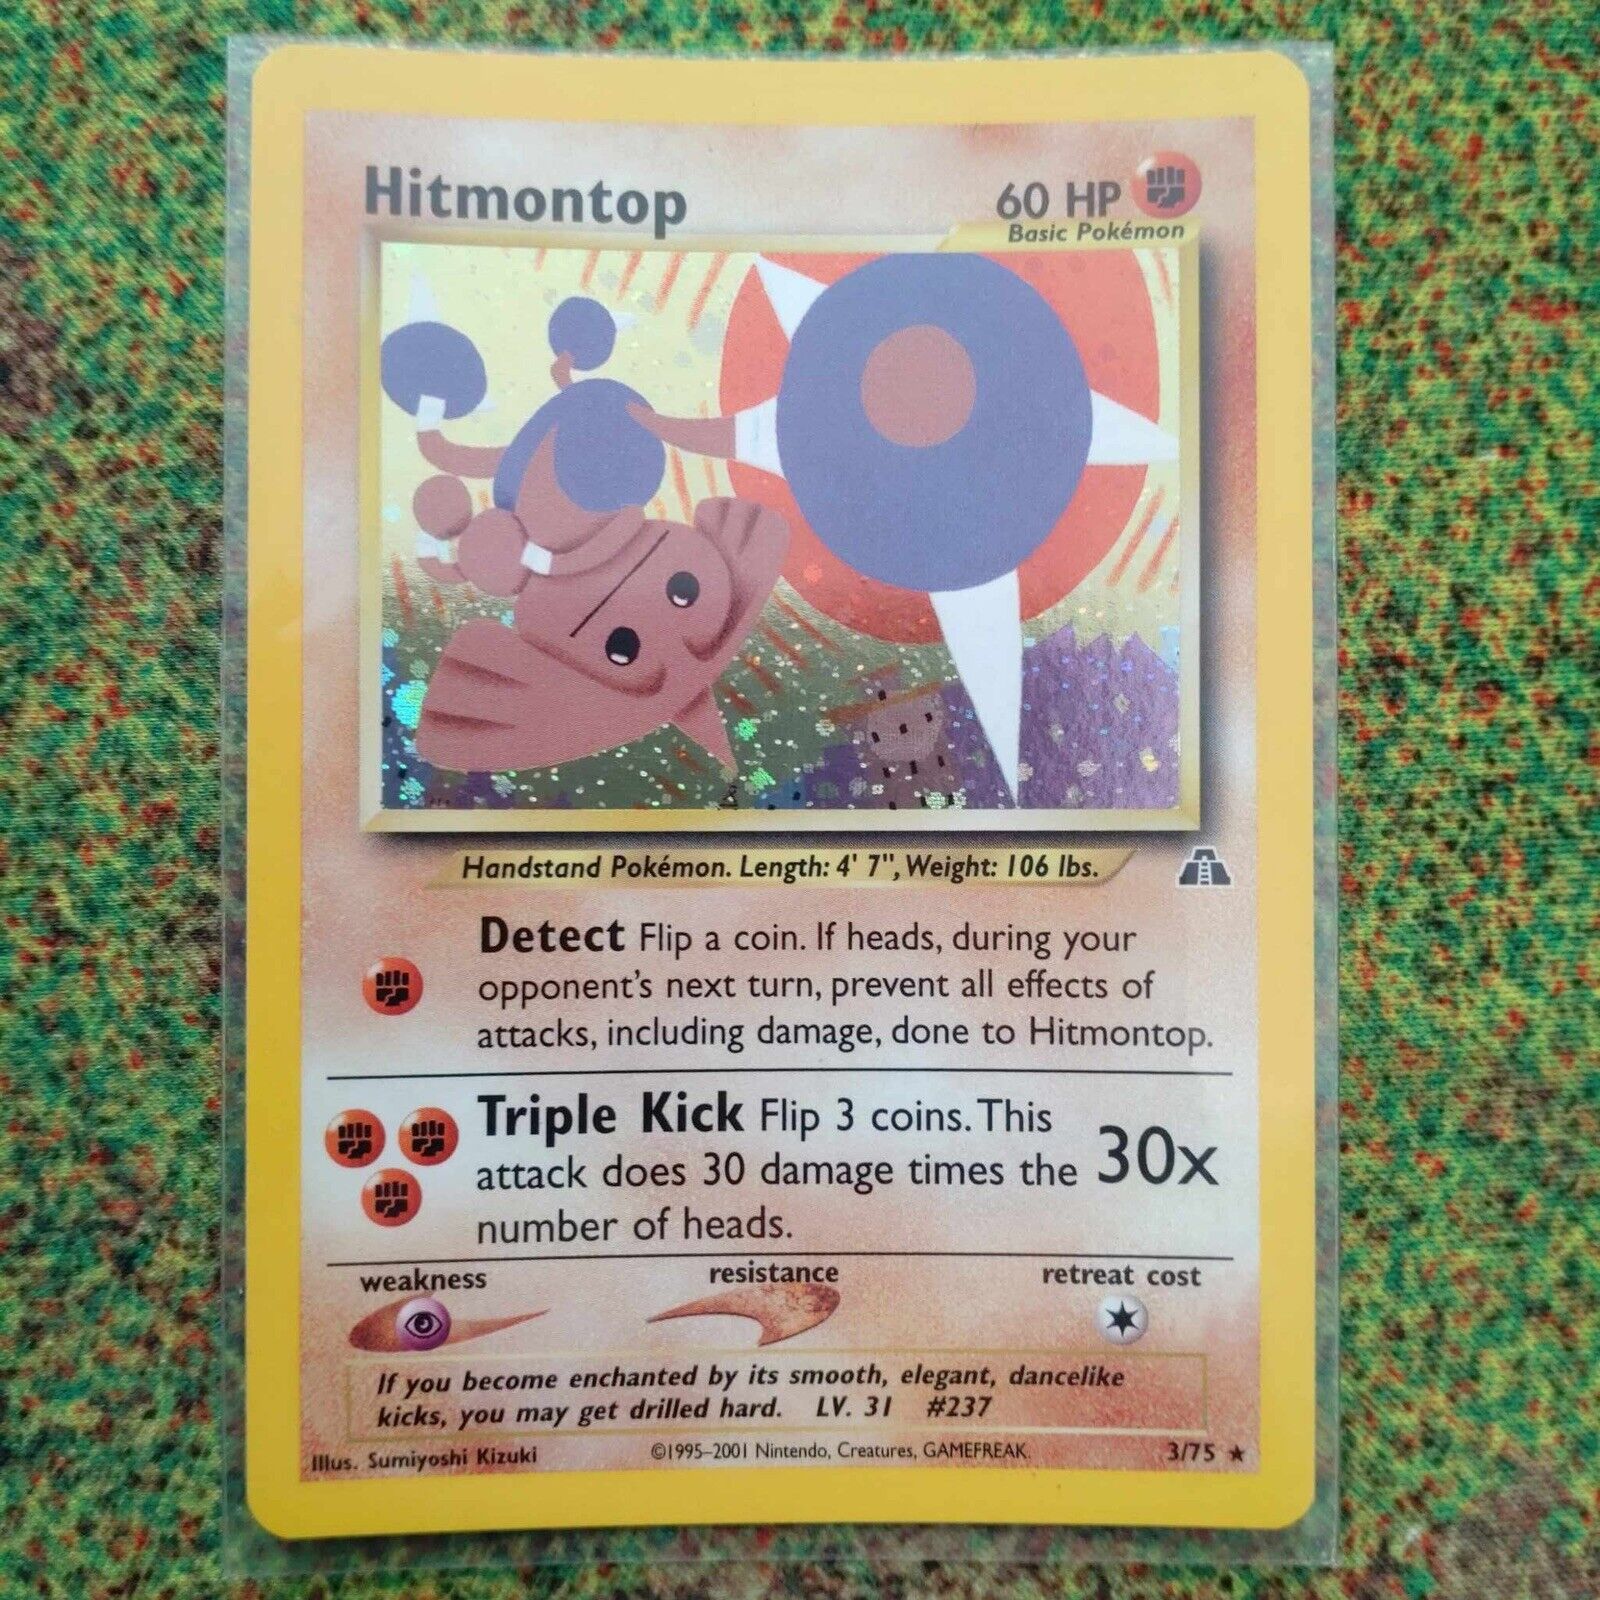 Pokémon Trading Cards Neo Discovery Set Hitmontop Mint / Near Mint 3/75